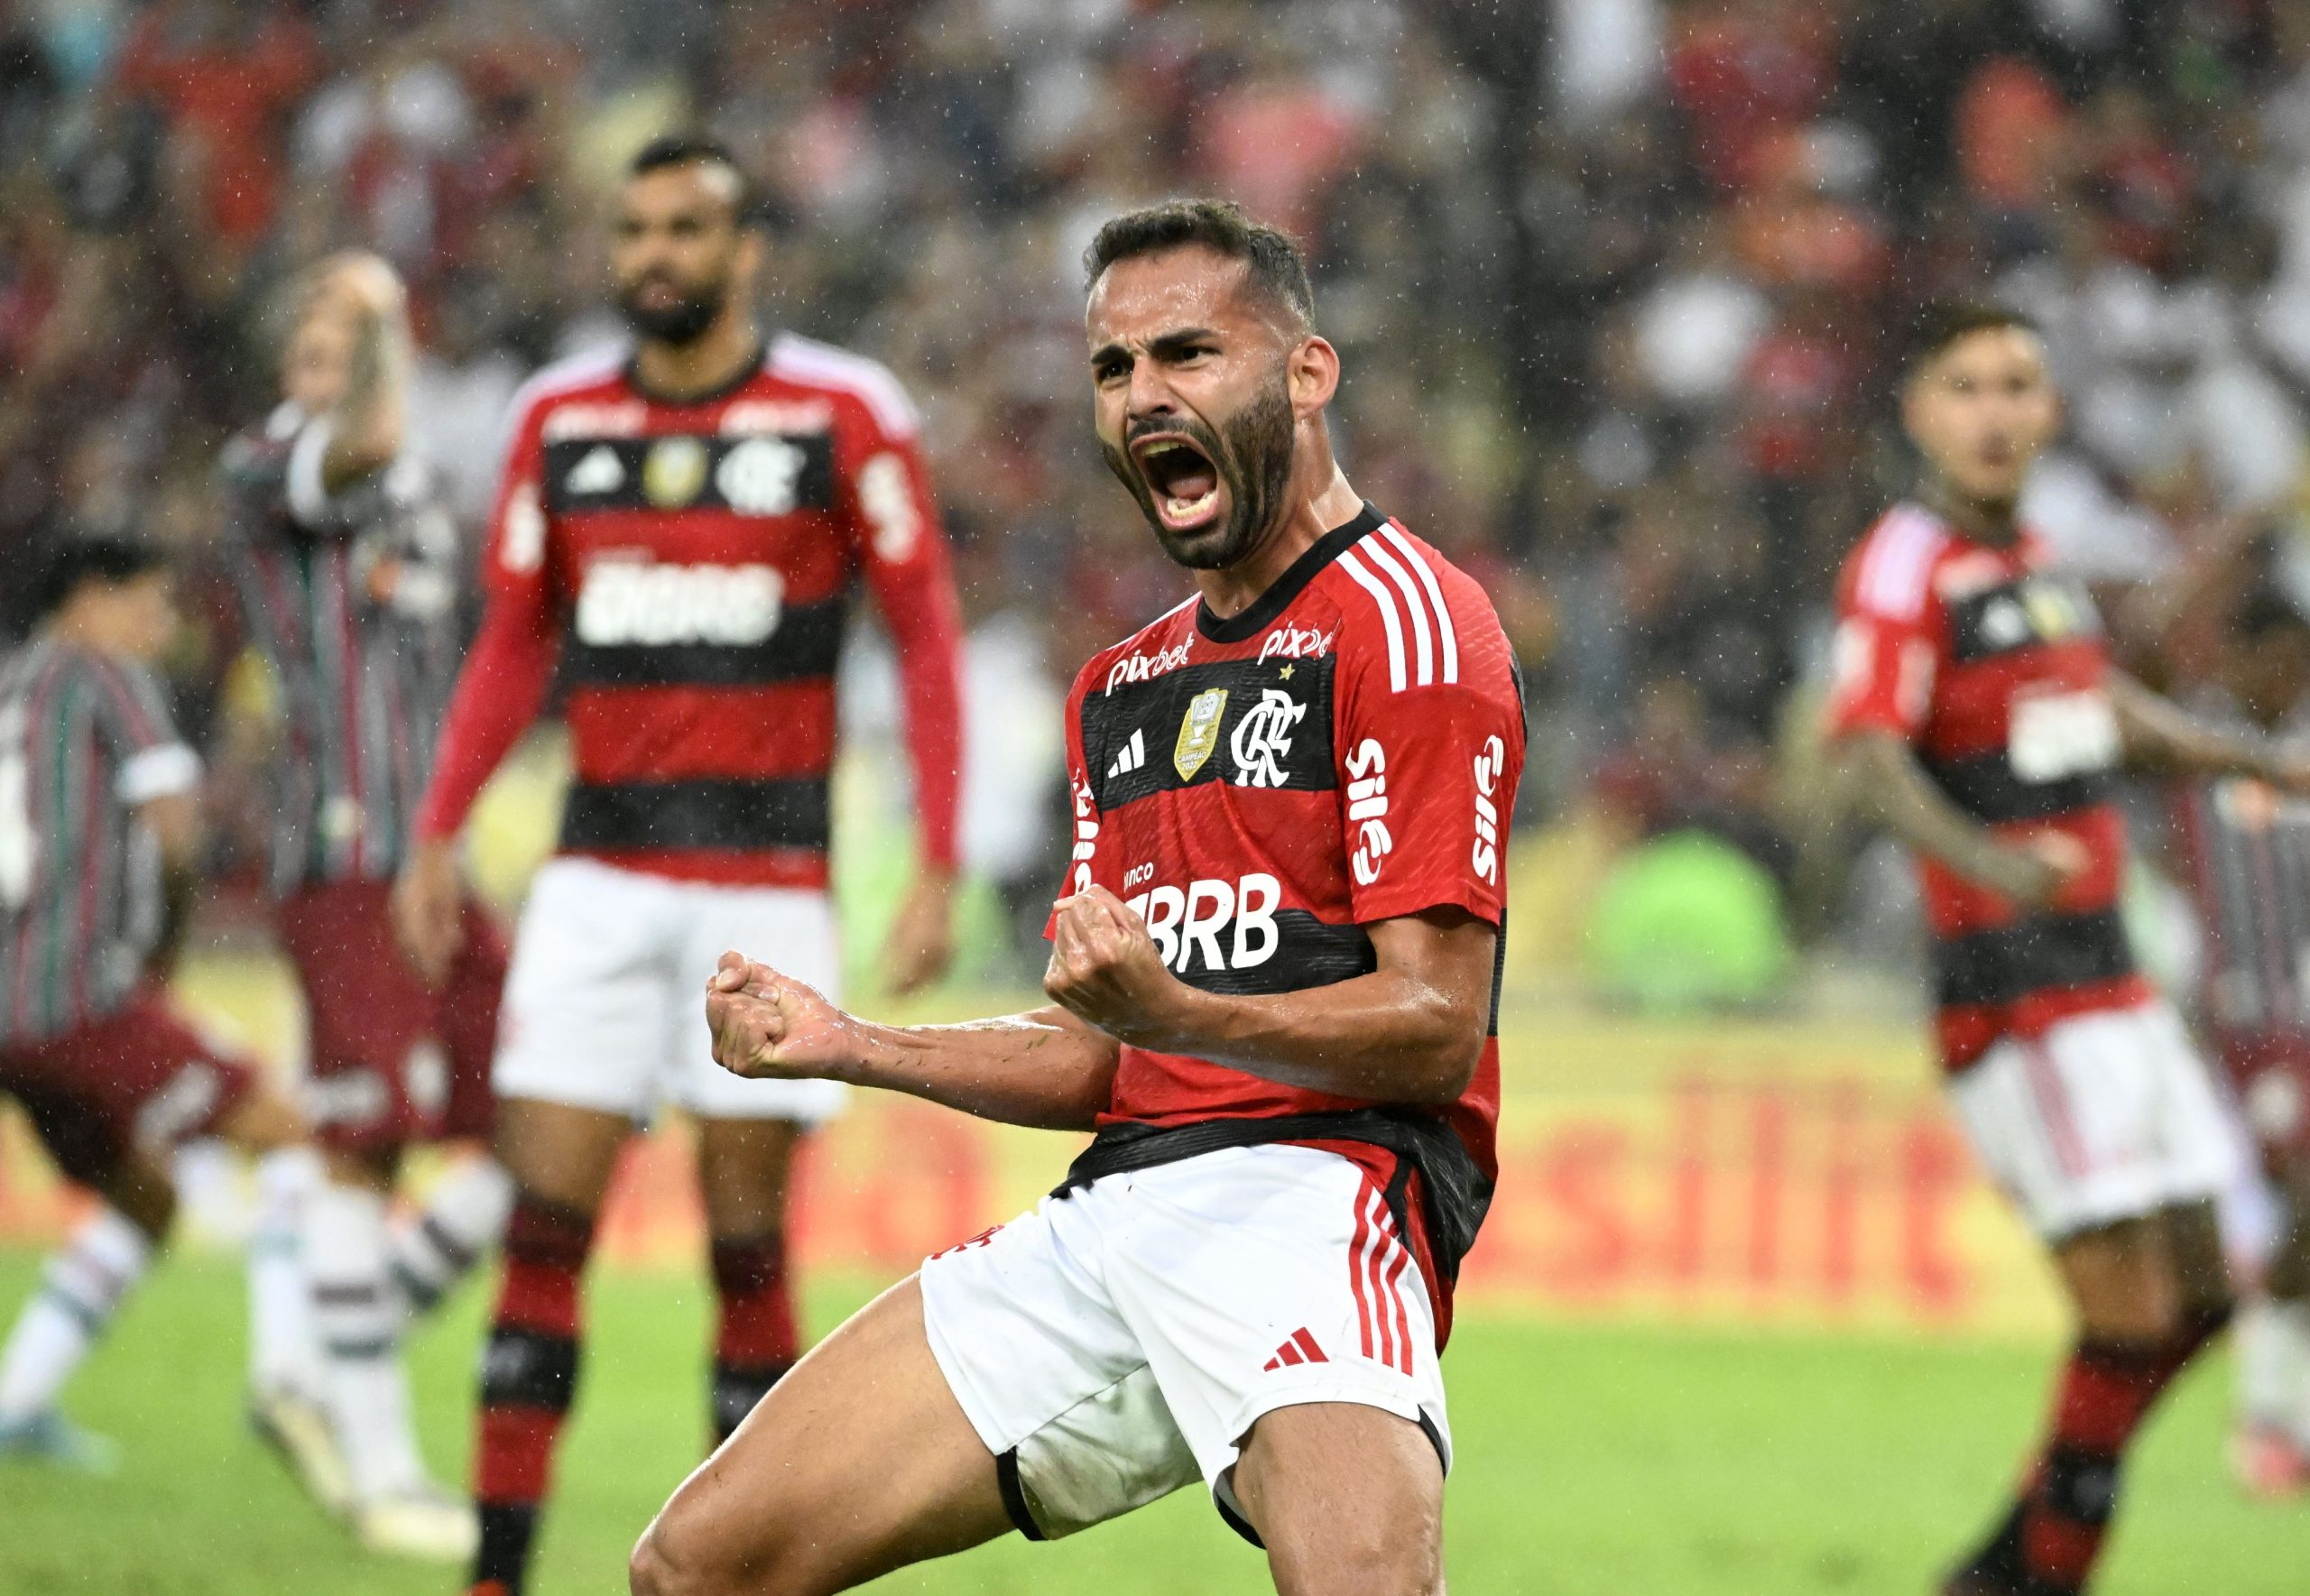 Salve o Corinthians! Torcedores do Flamengo agradecem a 'força' para título